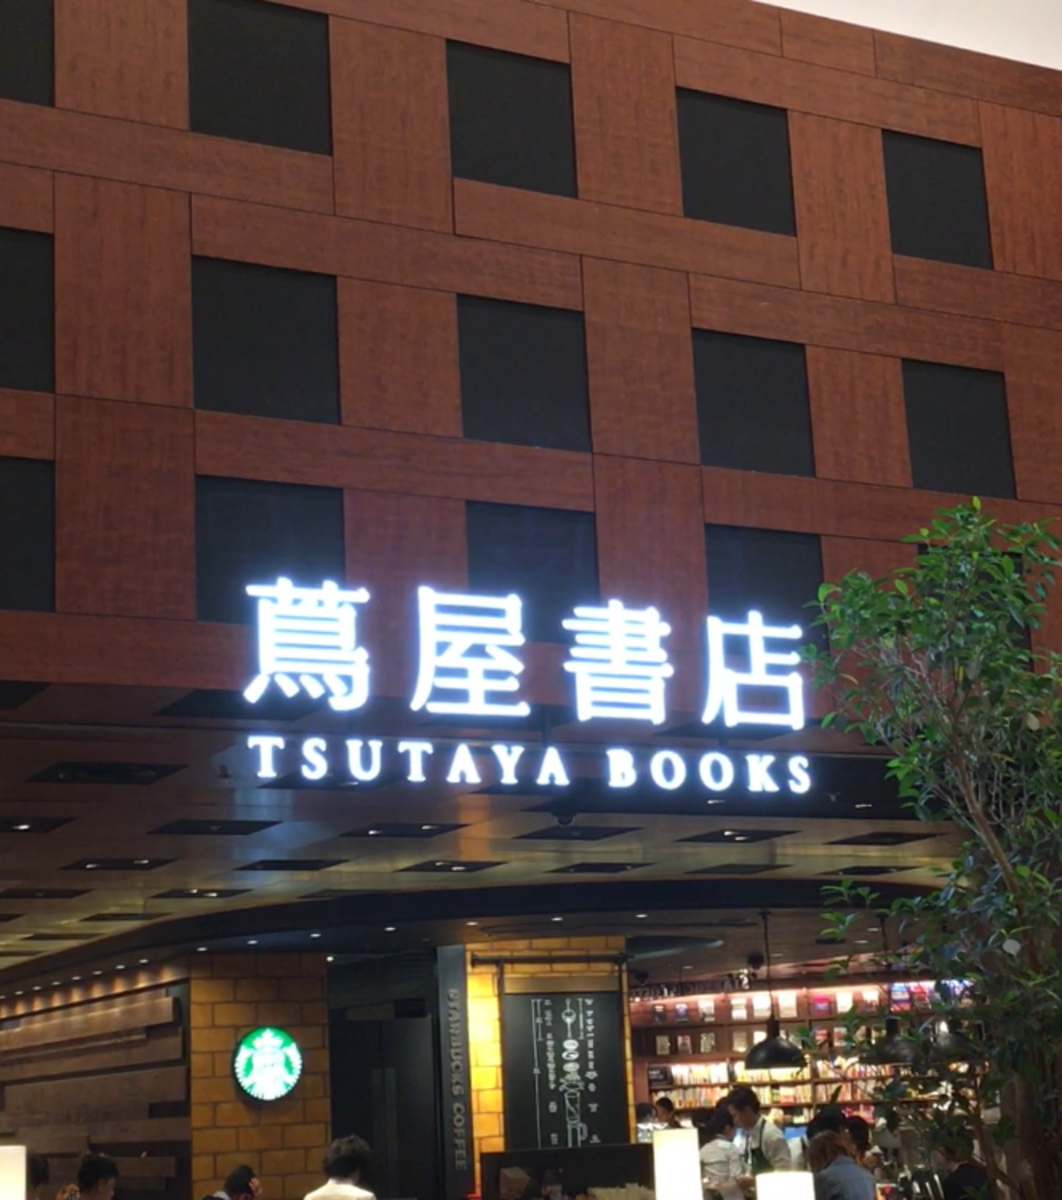 梅田 蔦屋書店